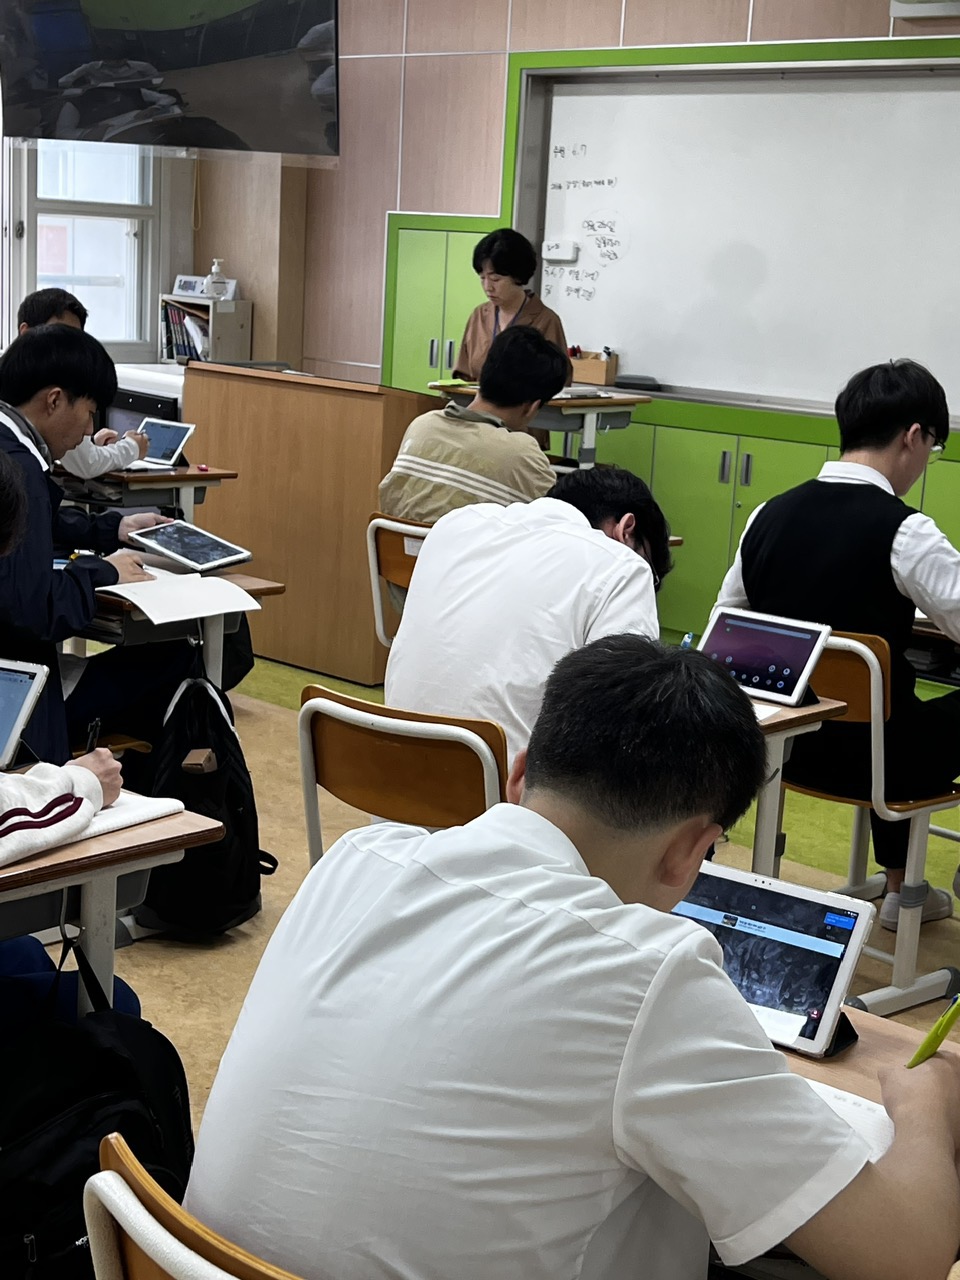 30 suất học bổng học THPT song song nghề: miễn 100% học phí tại Hàn Quốc dành cho HS tốt nghiệp THCS hoặc đang học 9+ ở CĐ Viễn Đông